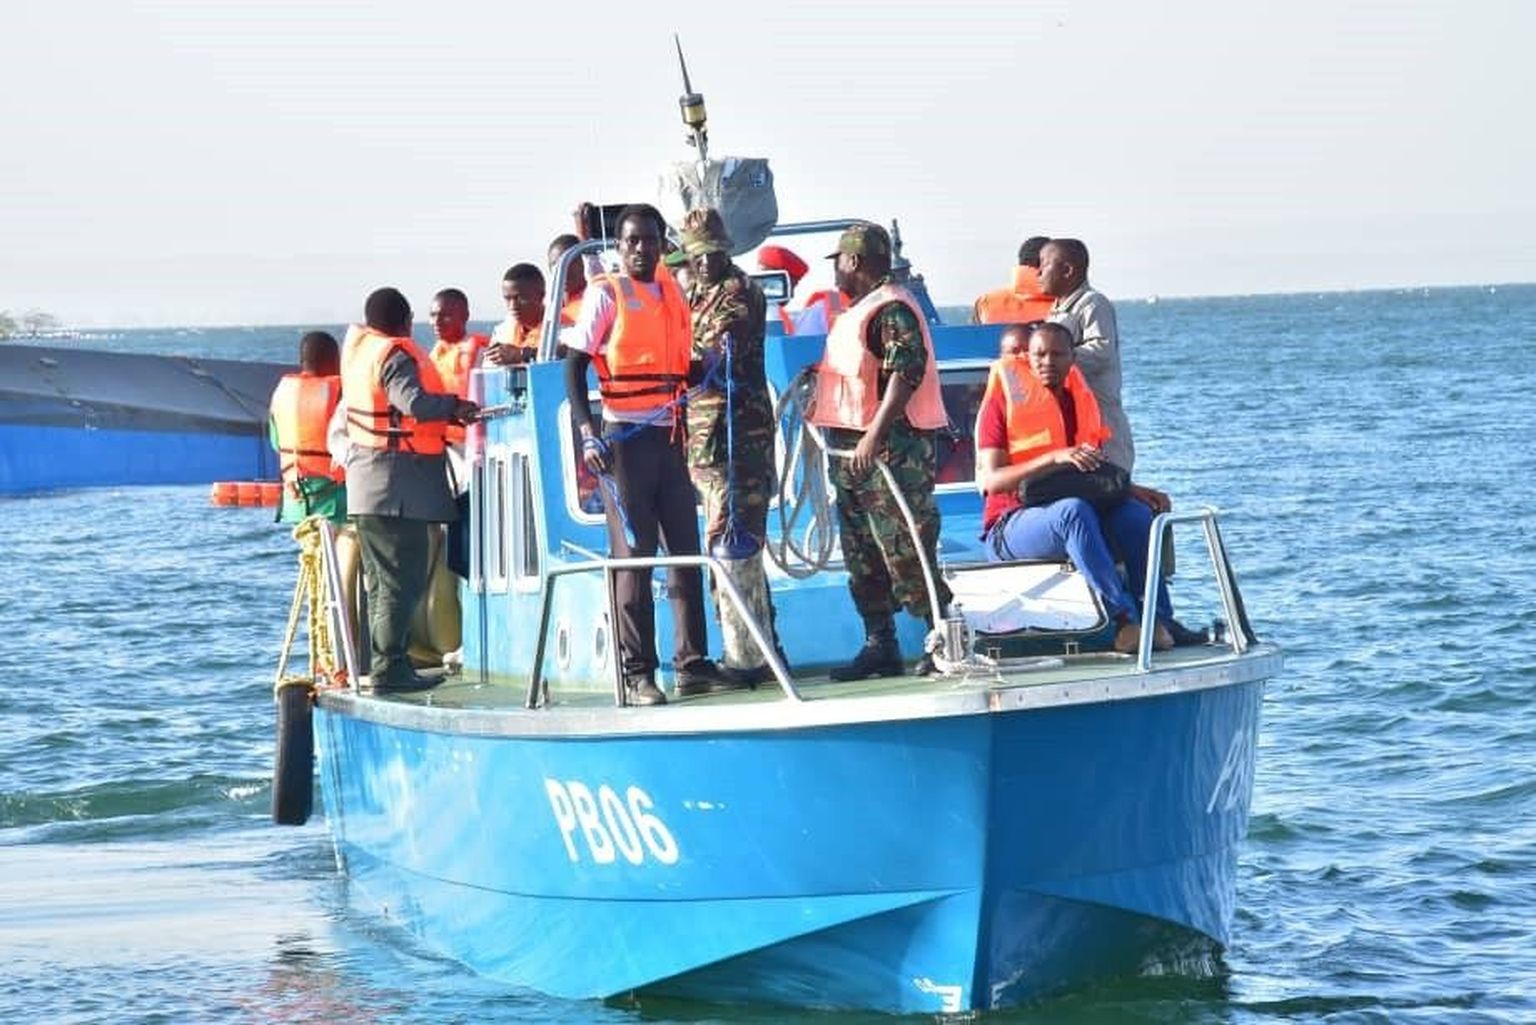 Tansaanias Victoria järvel jätkusid ka täna päästetööd neljapäevase laevaõnnetuse ohvrite leidmiseks.